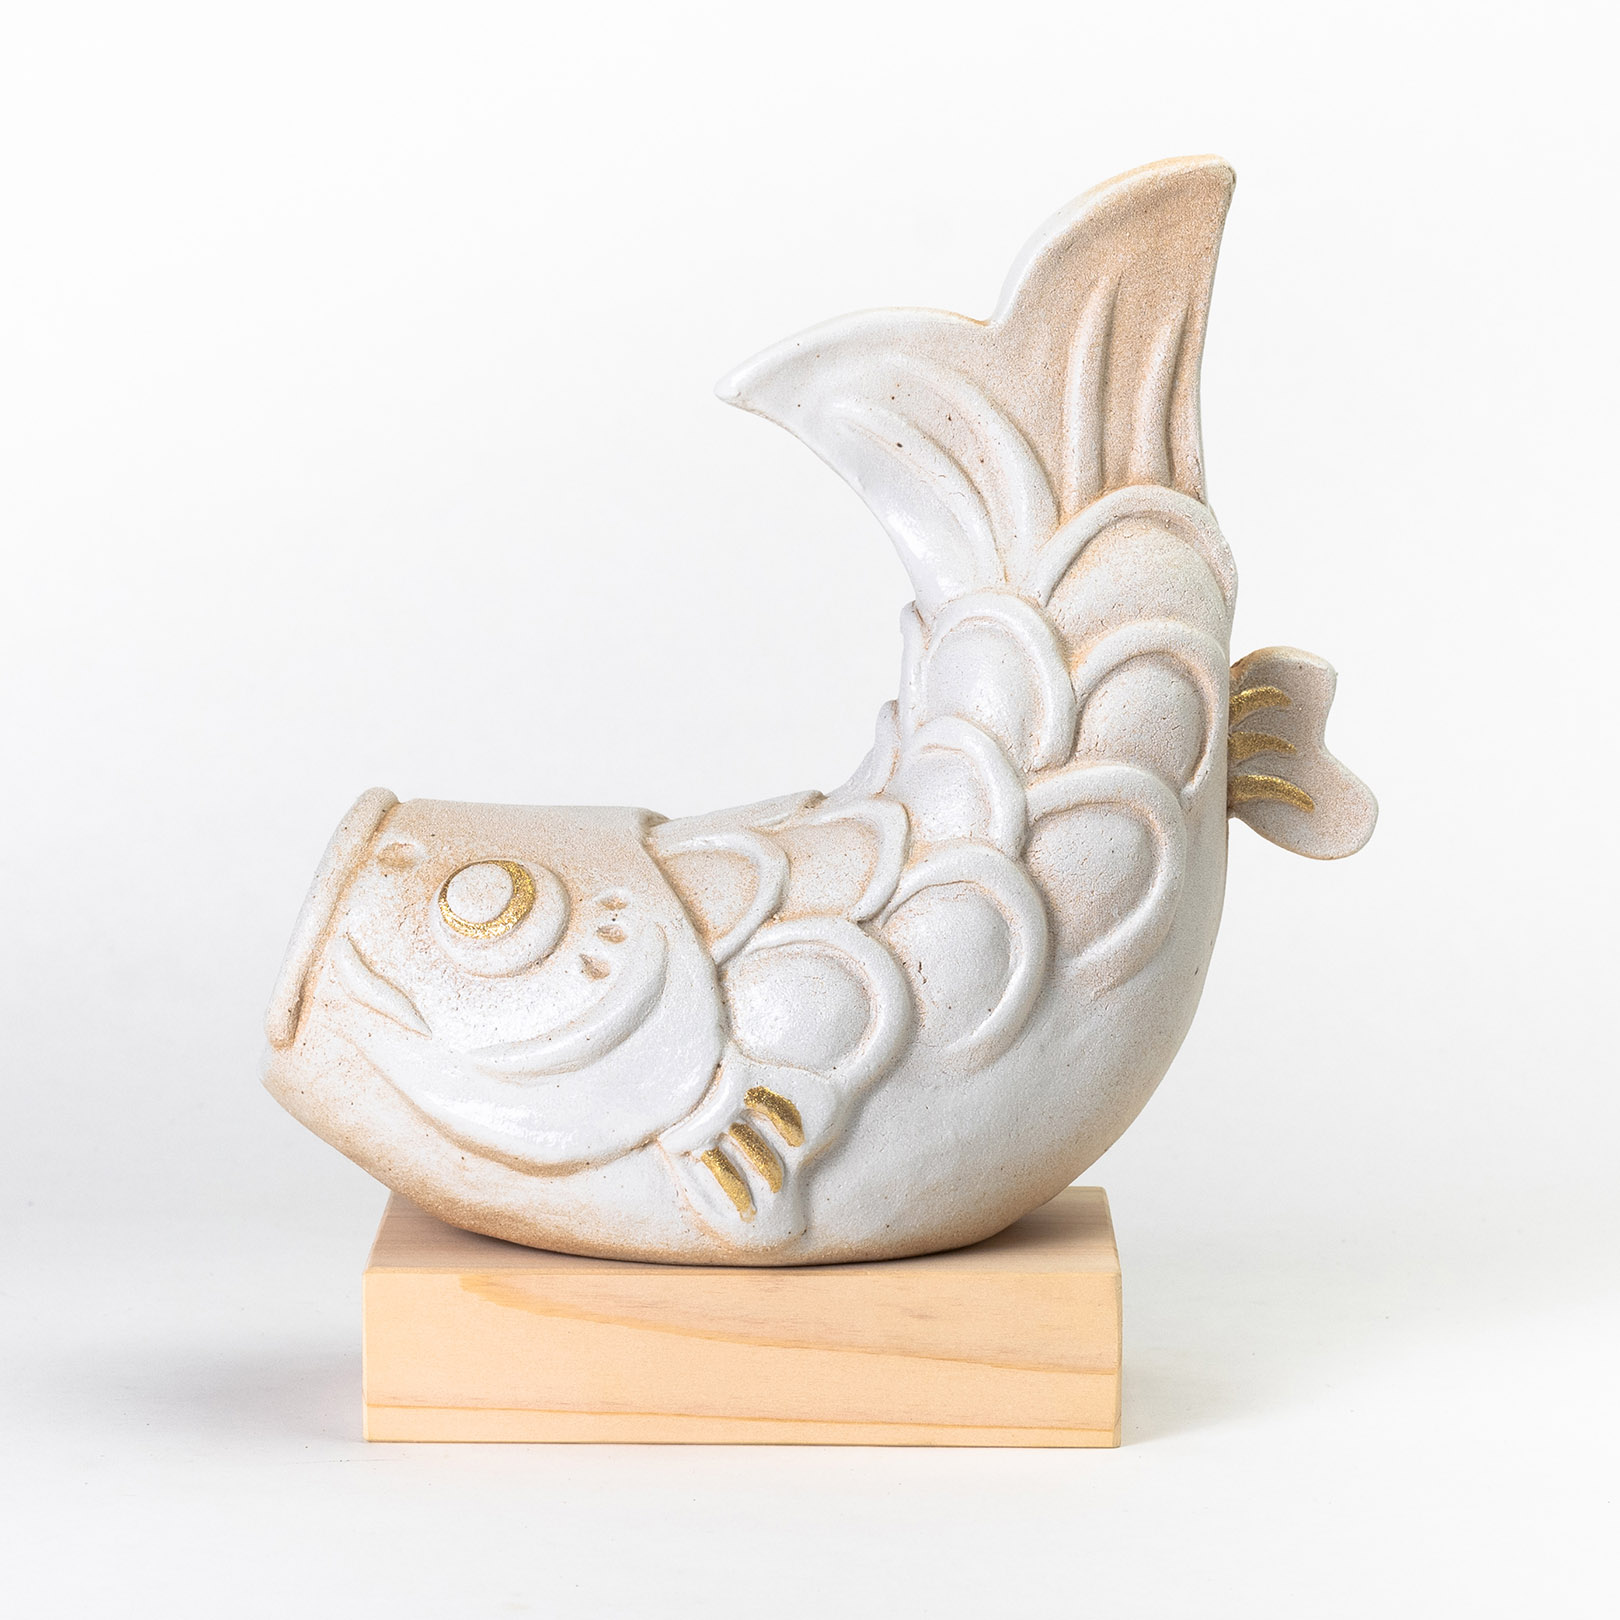 信楽焼の陶器の鯉のぼりを飾っている画像